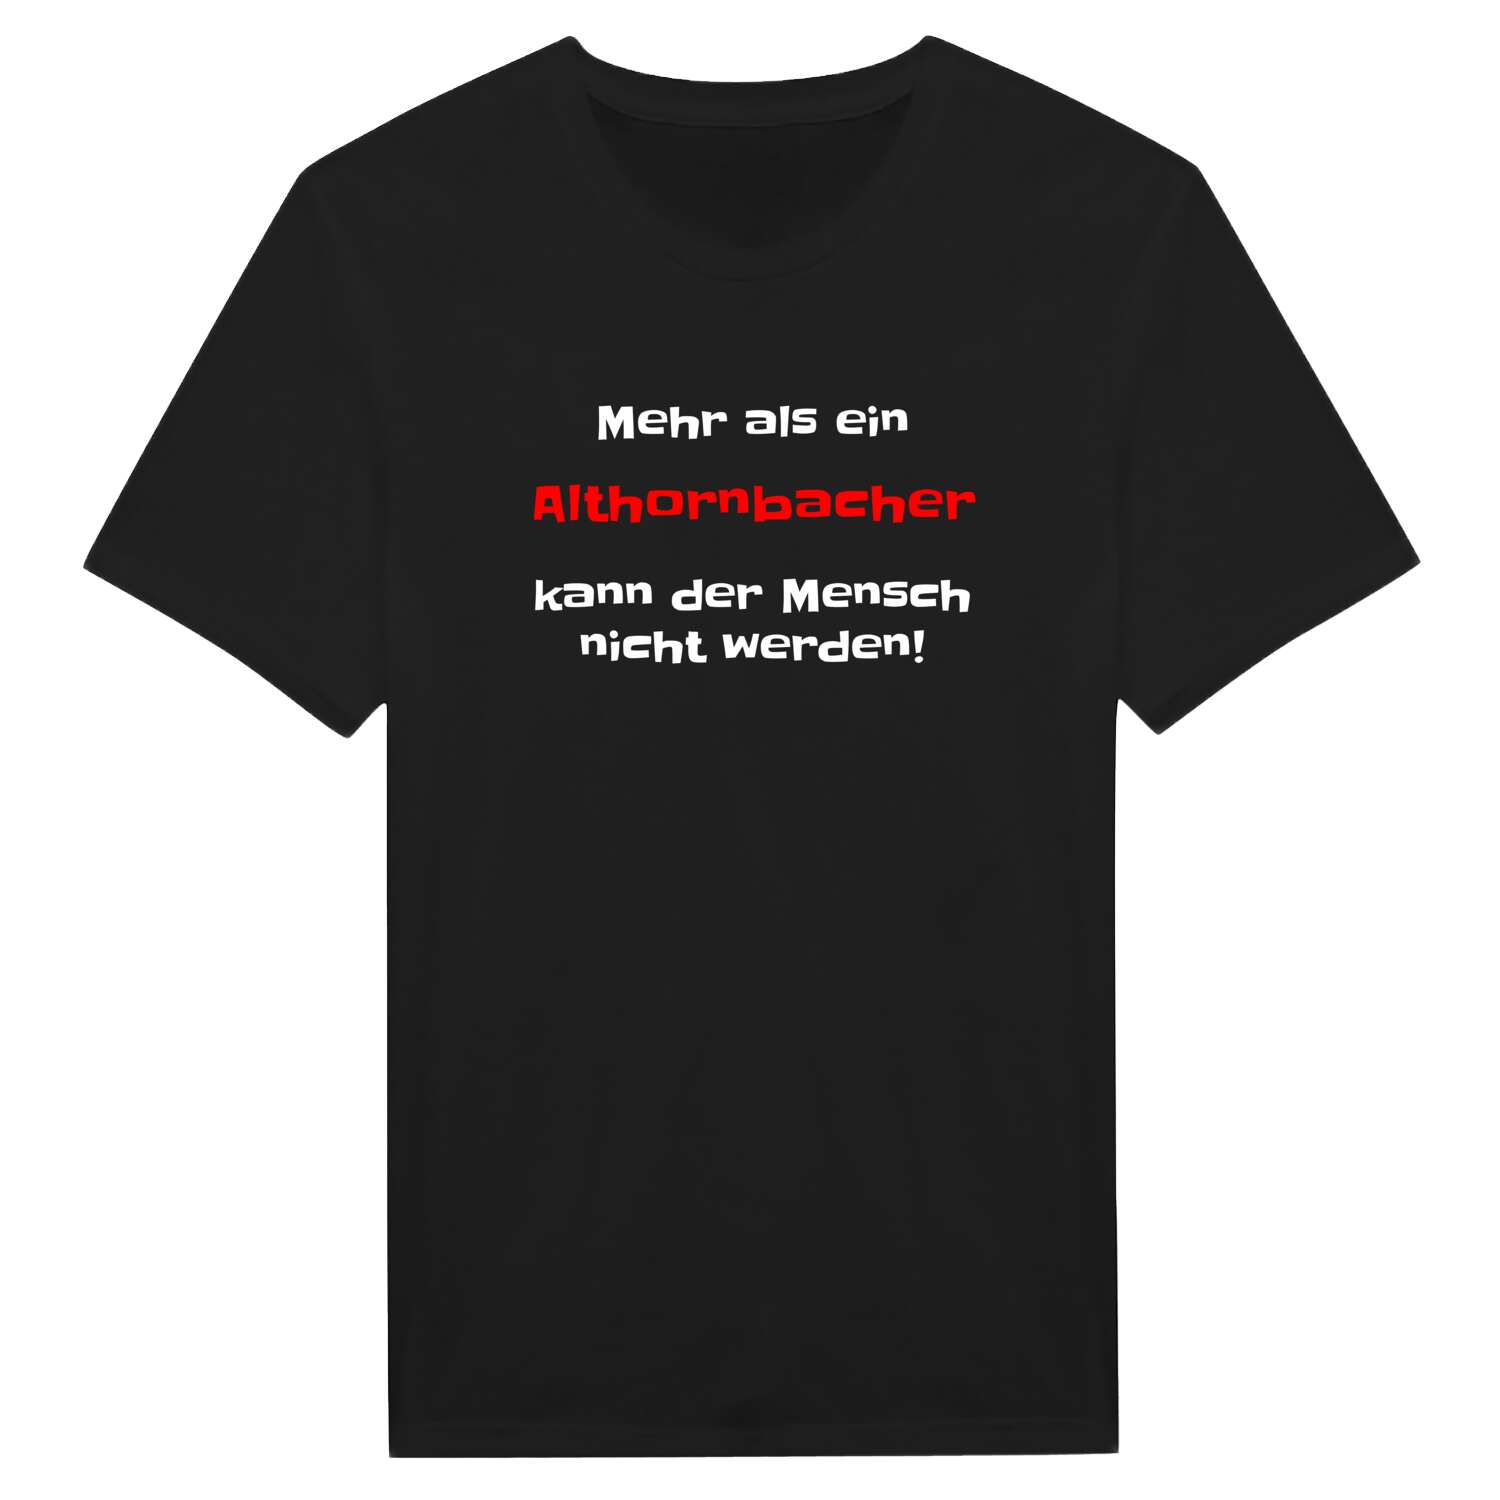 Althornbach T-Shirt »Mehr als ein«